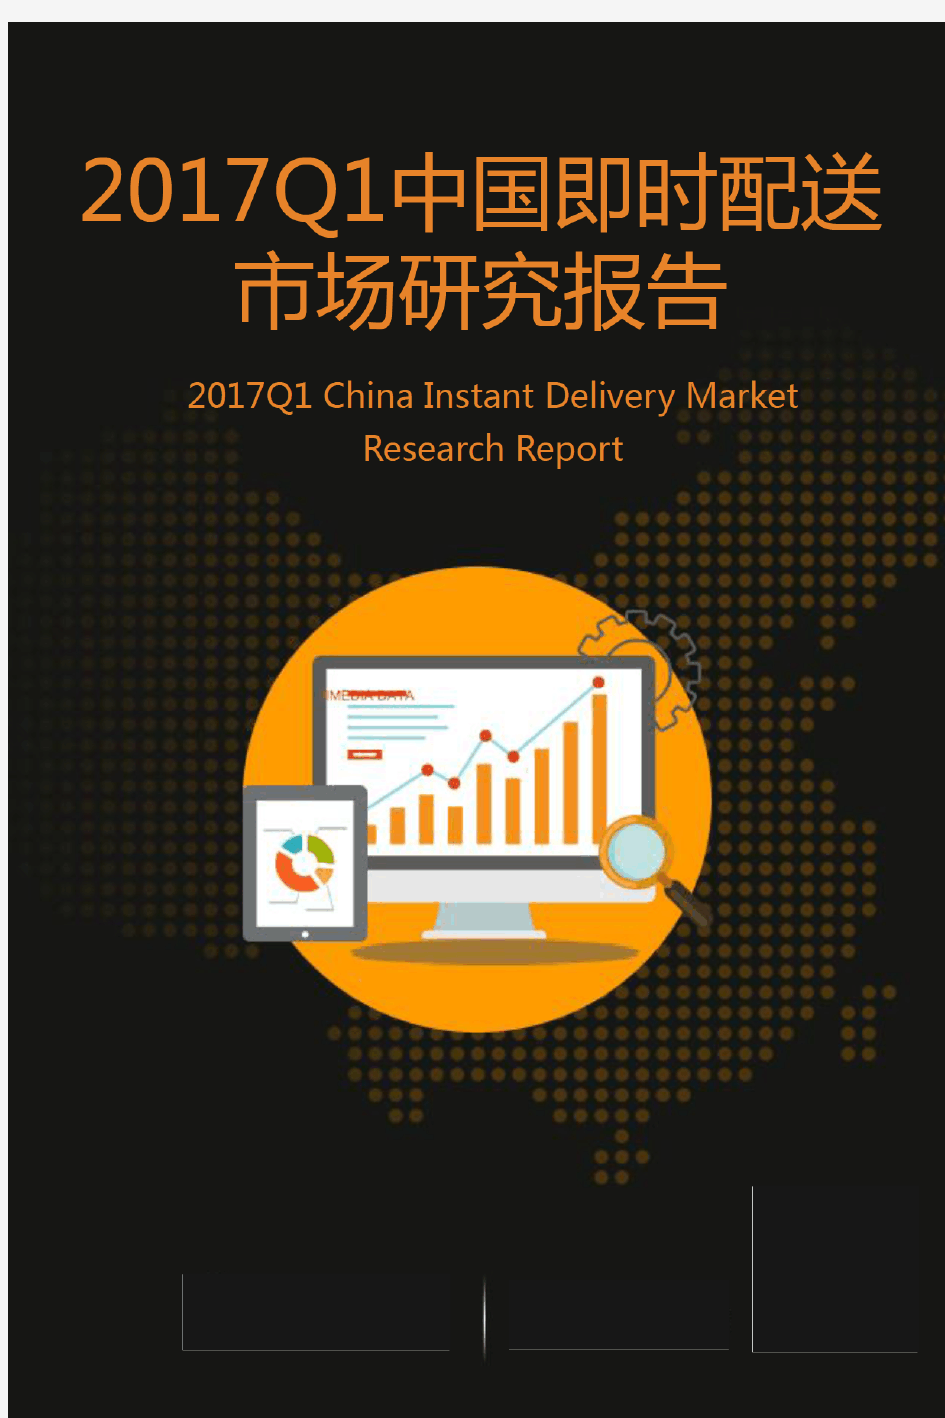 2017年中国即时配送市场研究报告